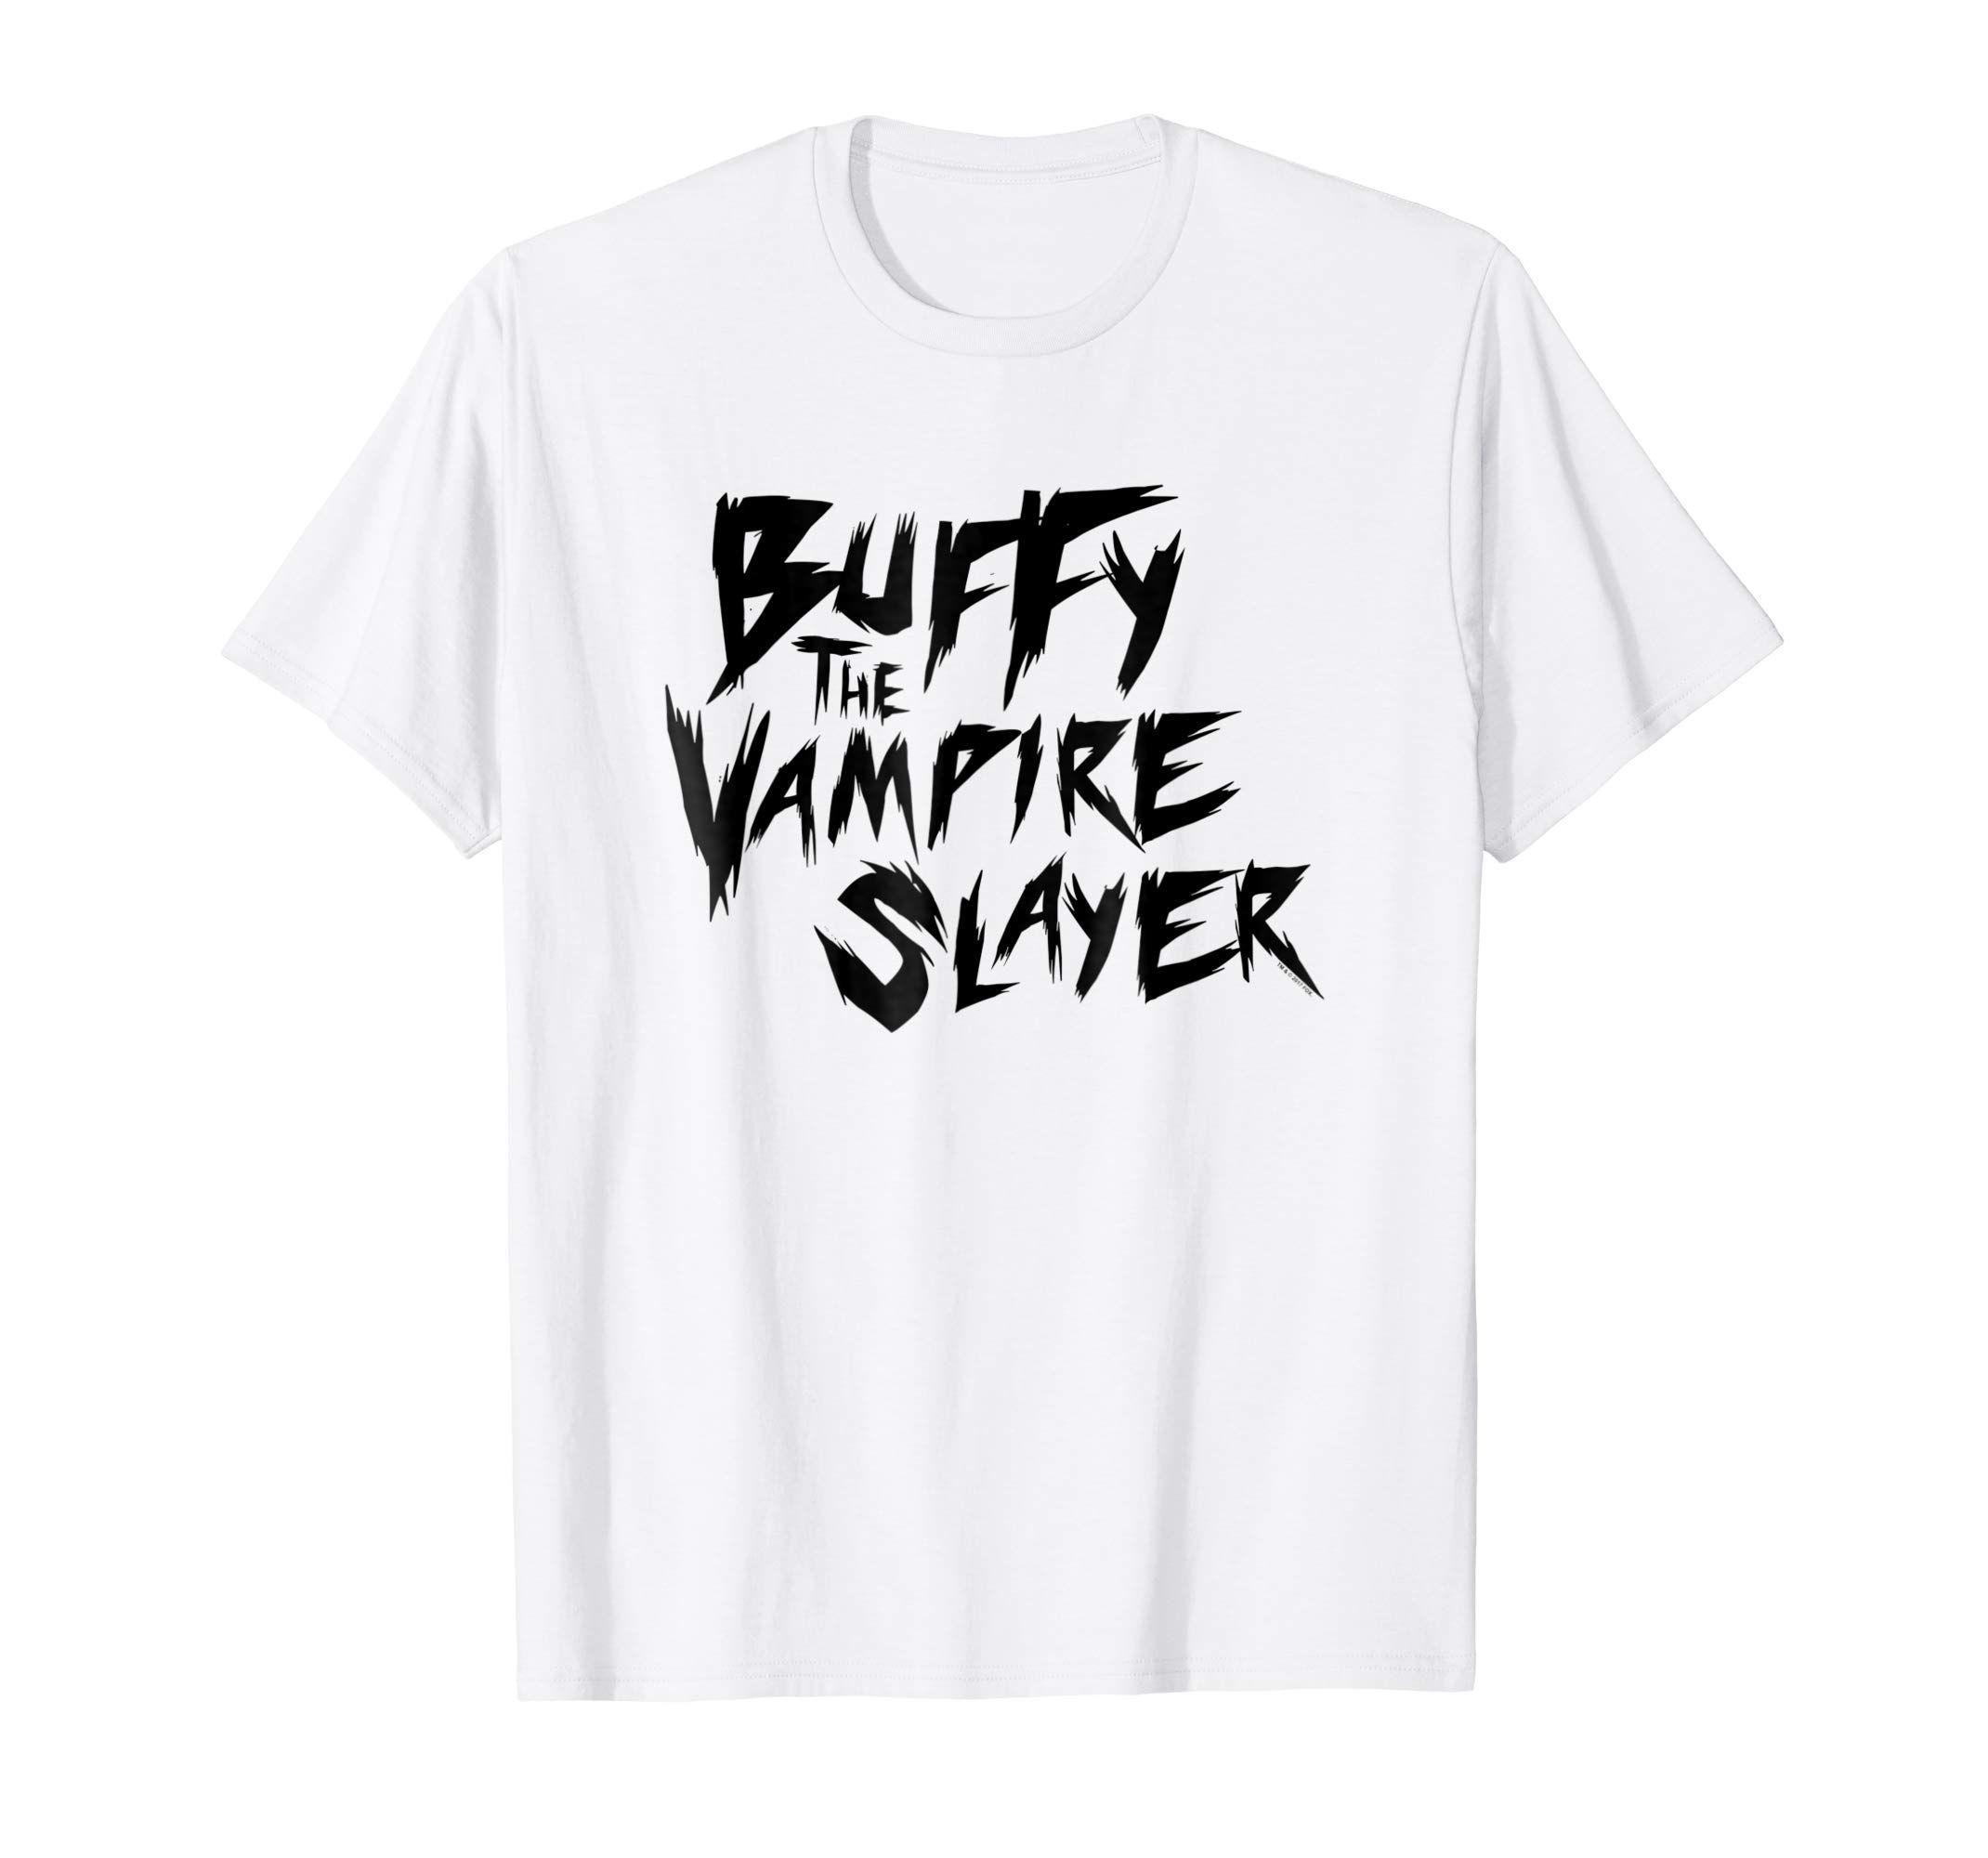 Buffy Logo - Amazon.com: Buffy the Vampire Slayer Buffy Logo T Shirt: Clothing